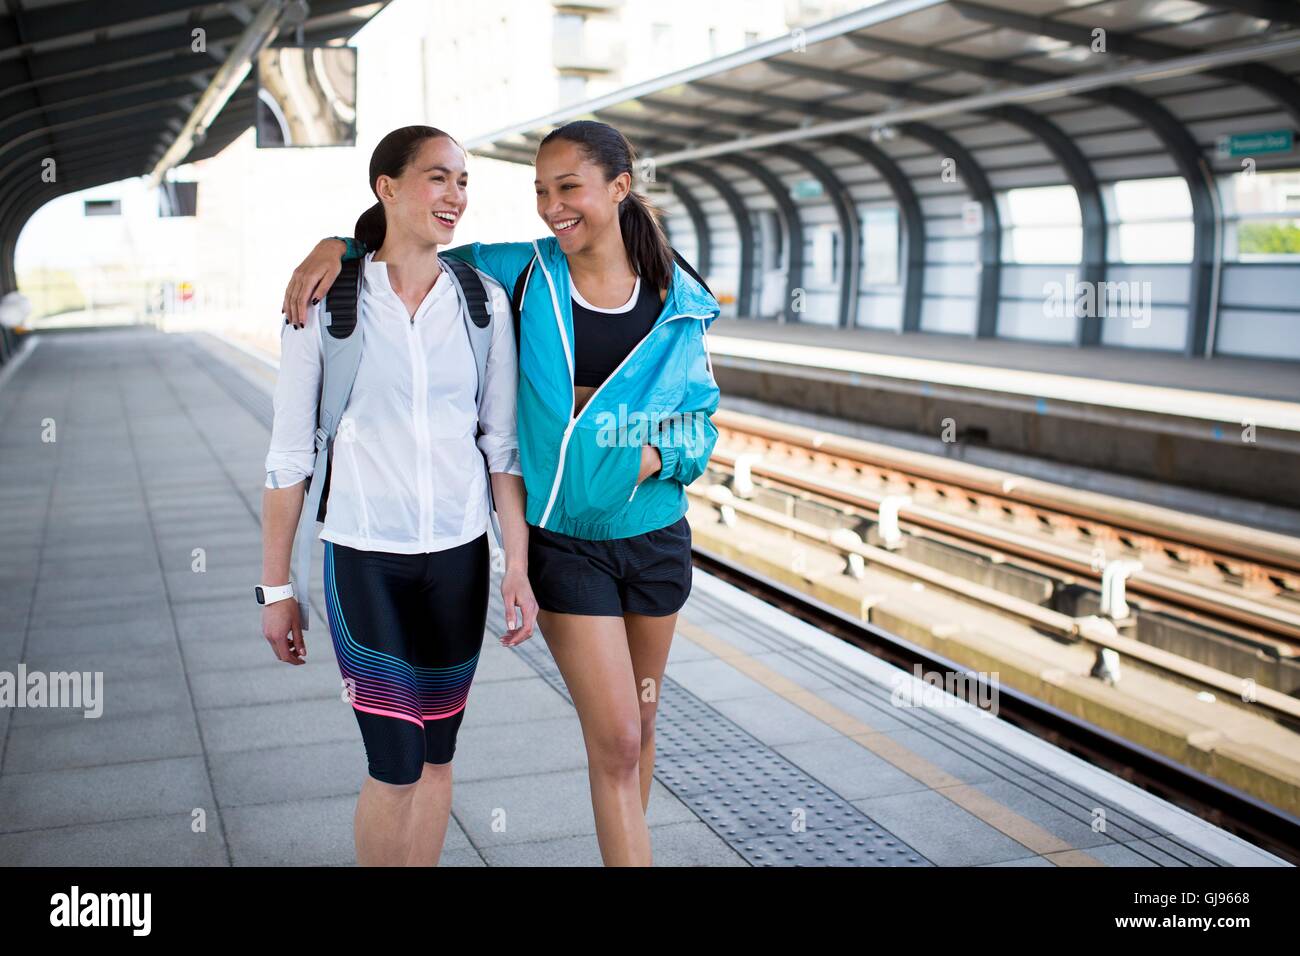 -MODELL VERÖFFENTLICHT. Zwei junge Frauen in Sportbekleidung auf Bahnsteig. Stockfoto